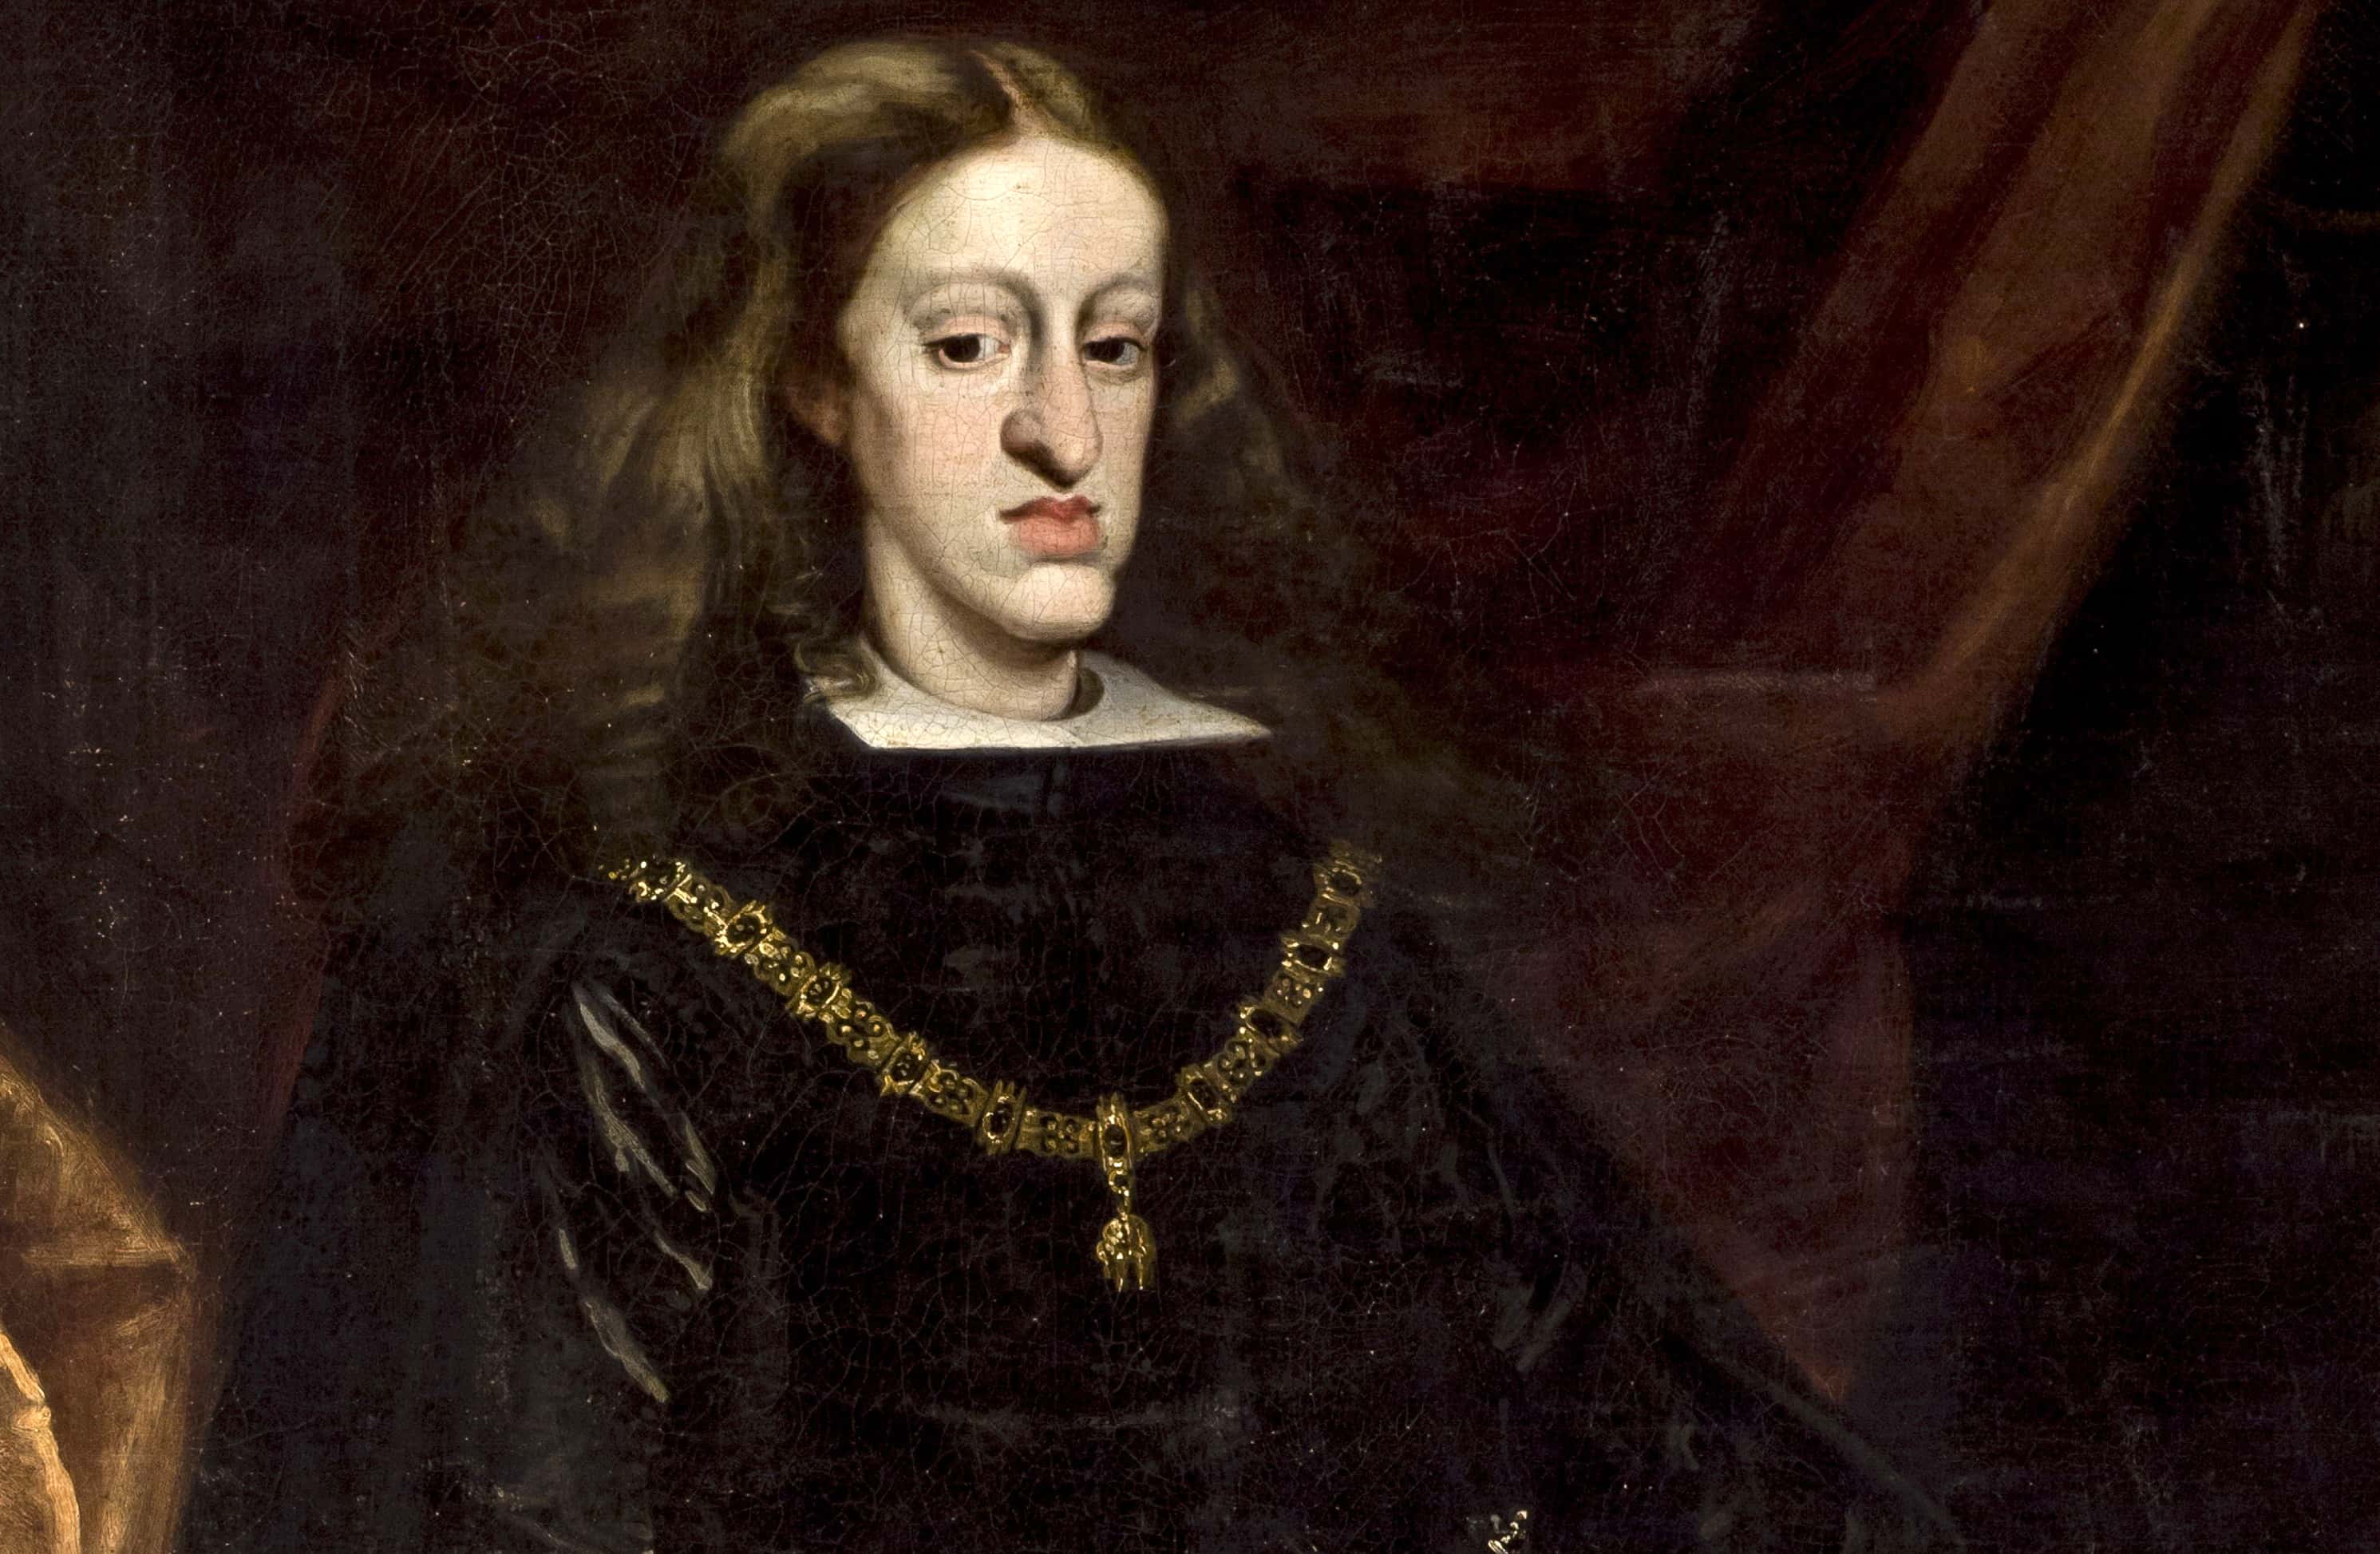 Короли габсбургов. Династия Габсбургов портреты. Последний Король Испании из династии Габсбургов.